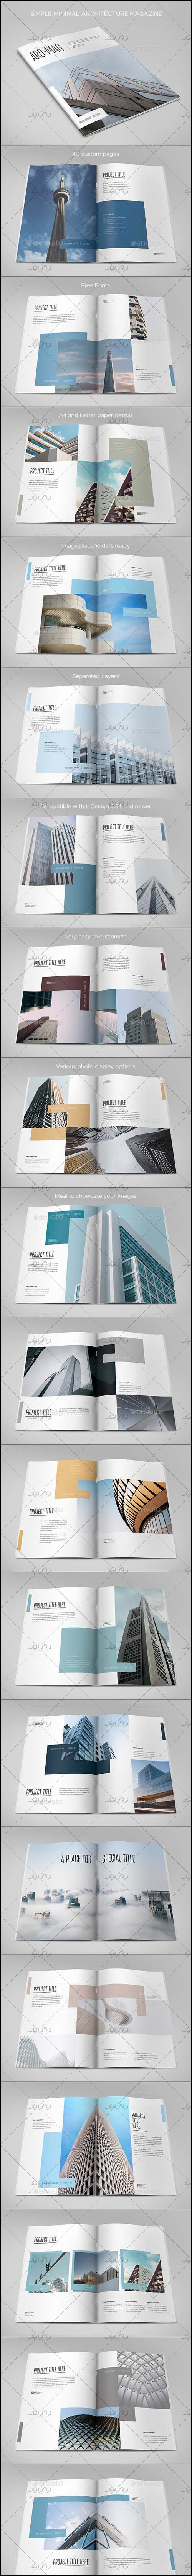 دانلود فایل لایه باز ایندیزاین قالب مجله معماری - شماره 2